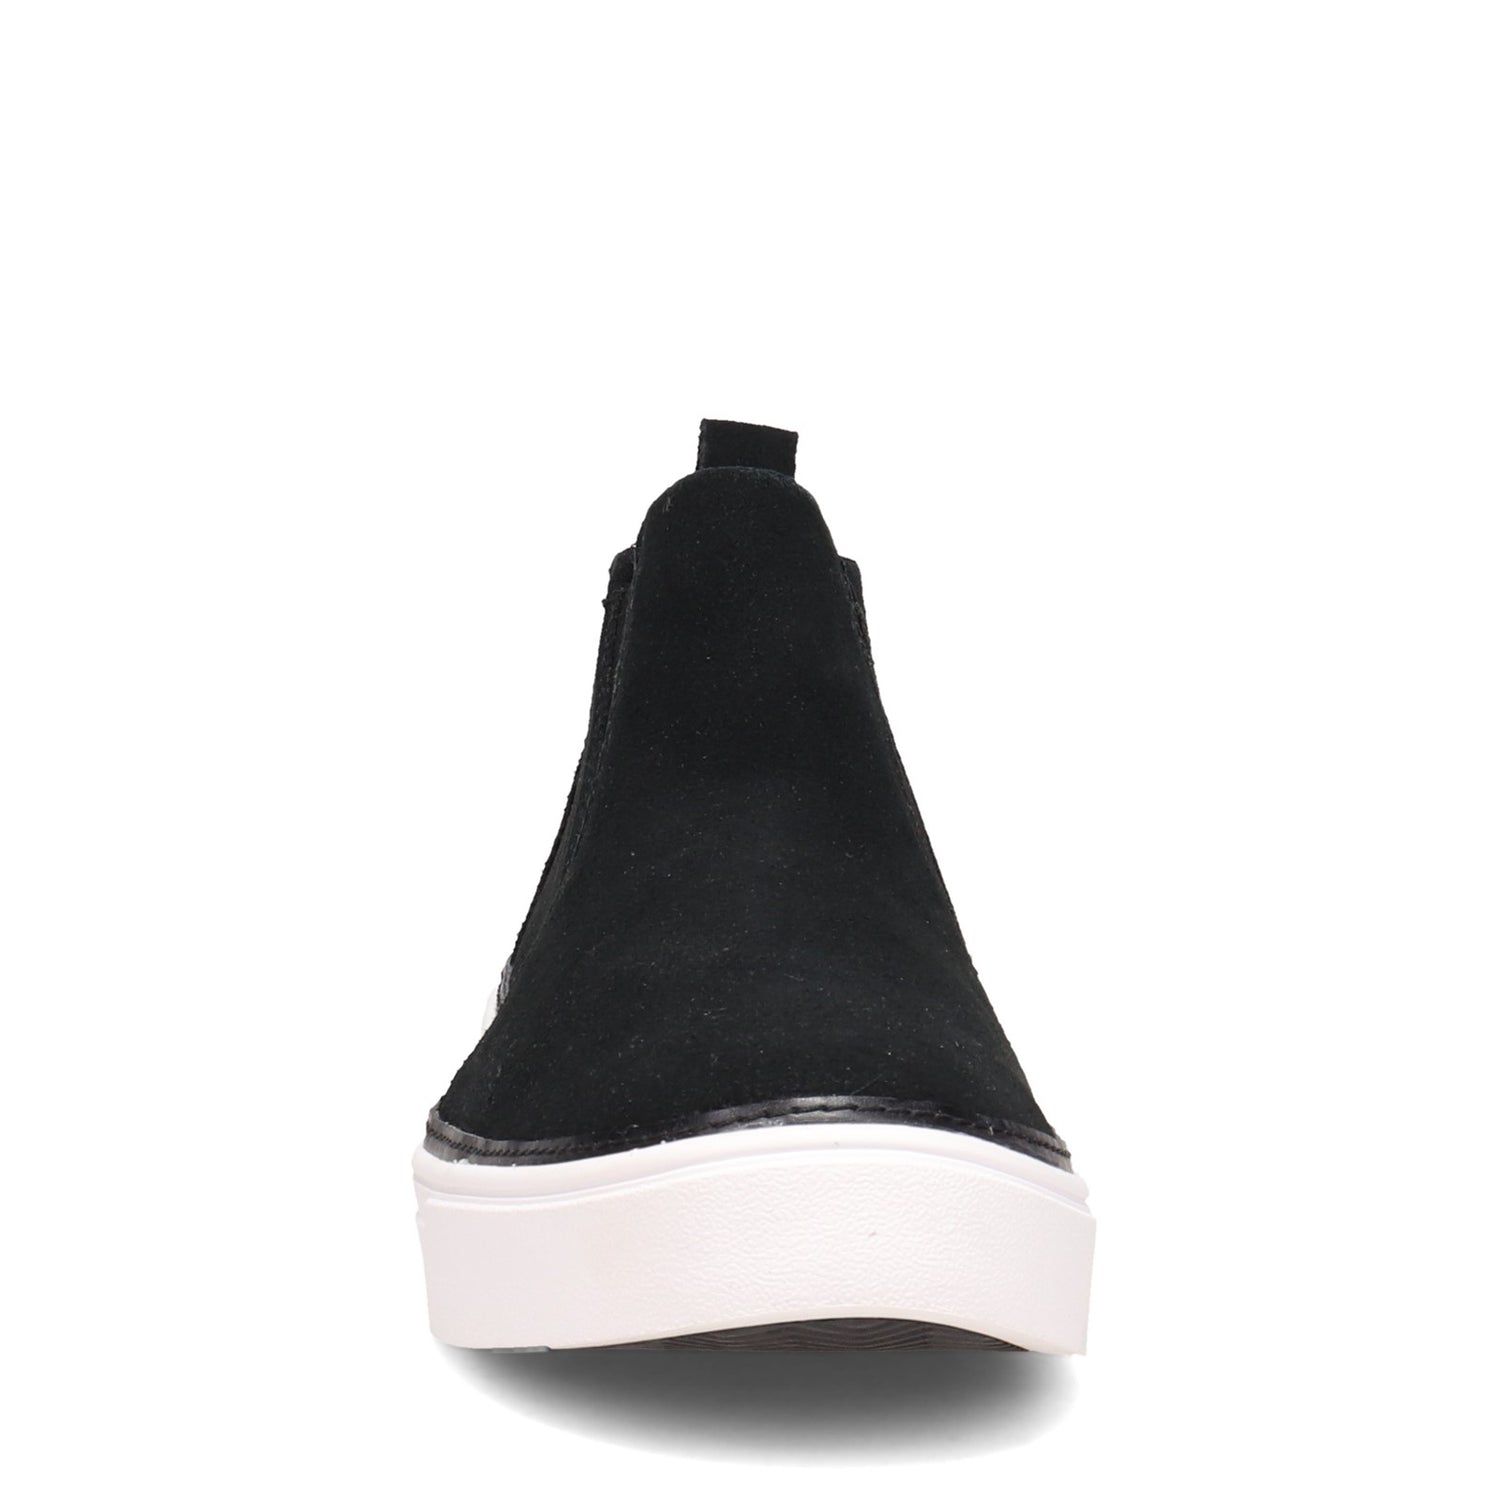 Peltz Shoes  Women's Tom Bryce Sneaker BLACK 10016767